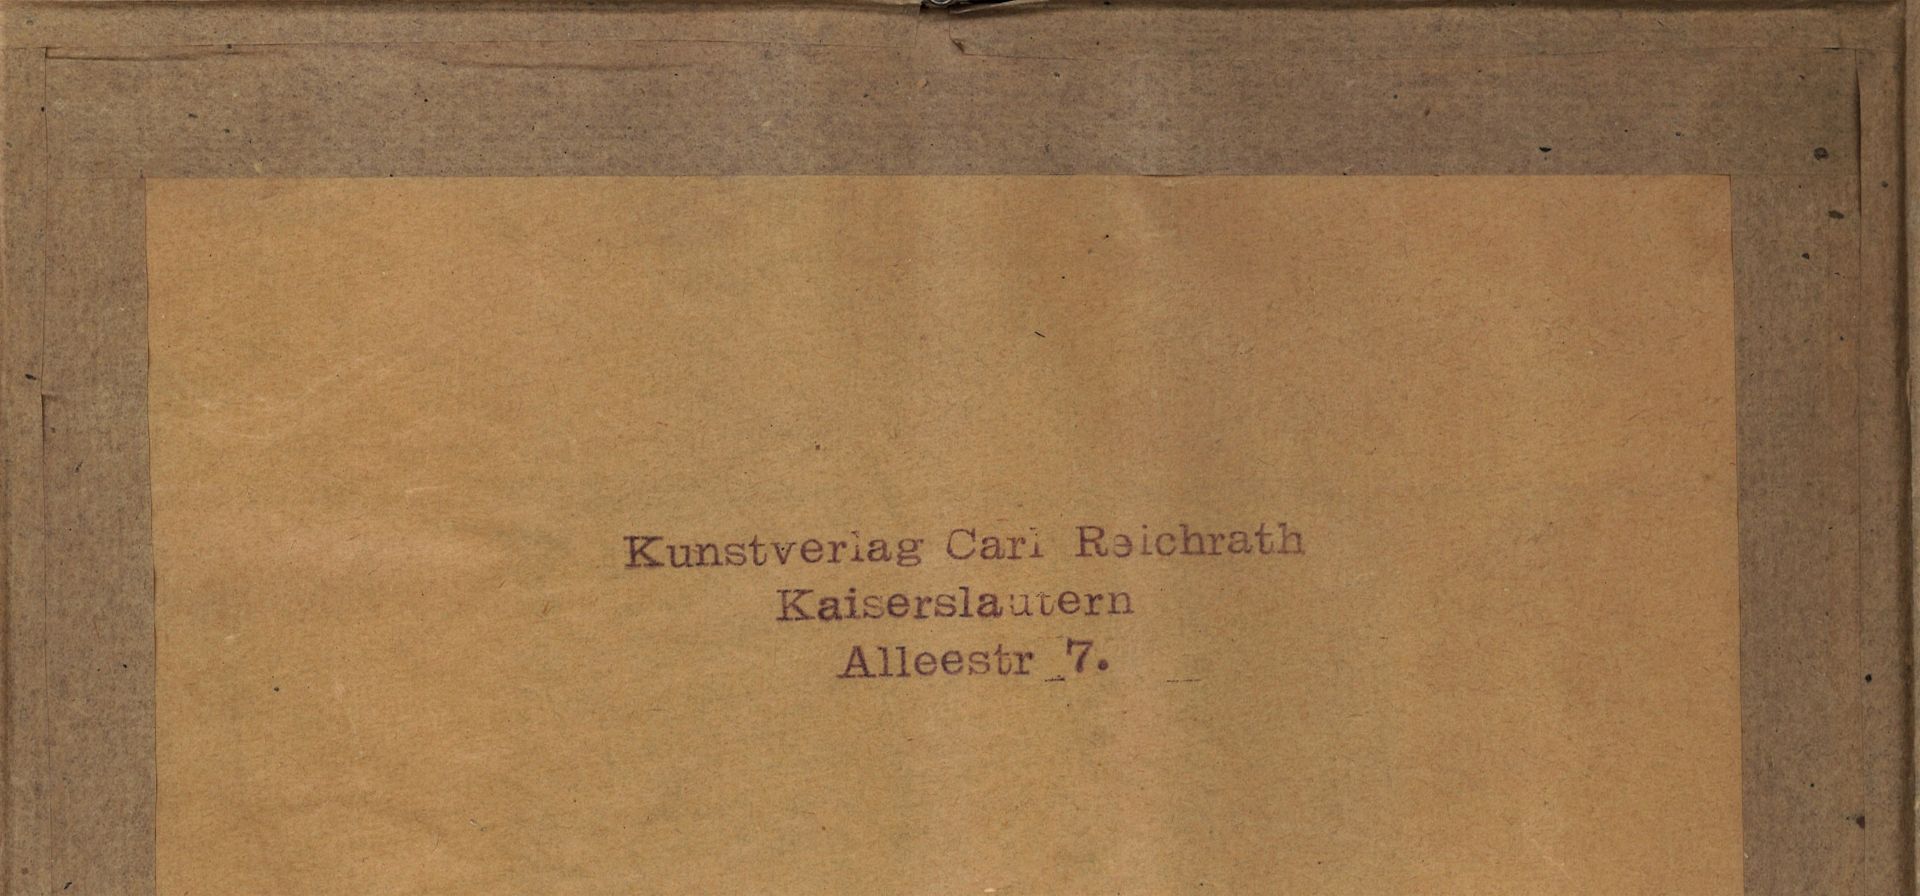 Karl Reichrath, Kaiserslautern , Radierung "Dom zu Worms / Rhein, Nr. 77/100. Hinter Glas gerahmt. - Image 2 of 2